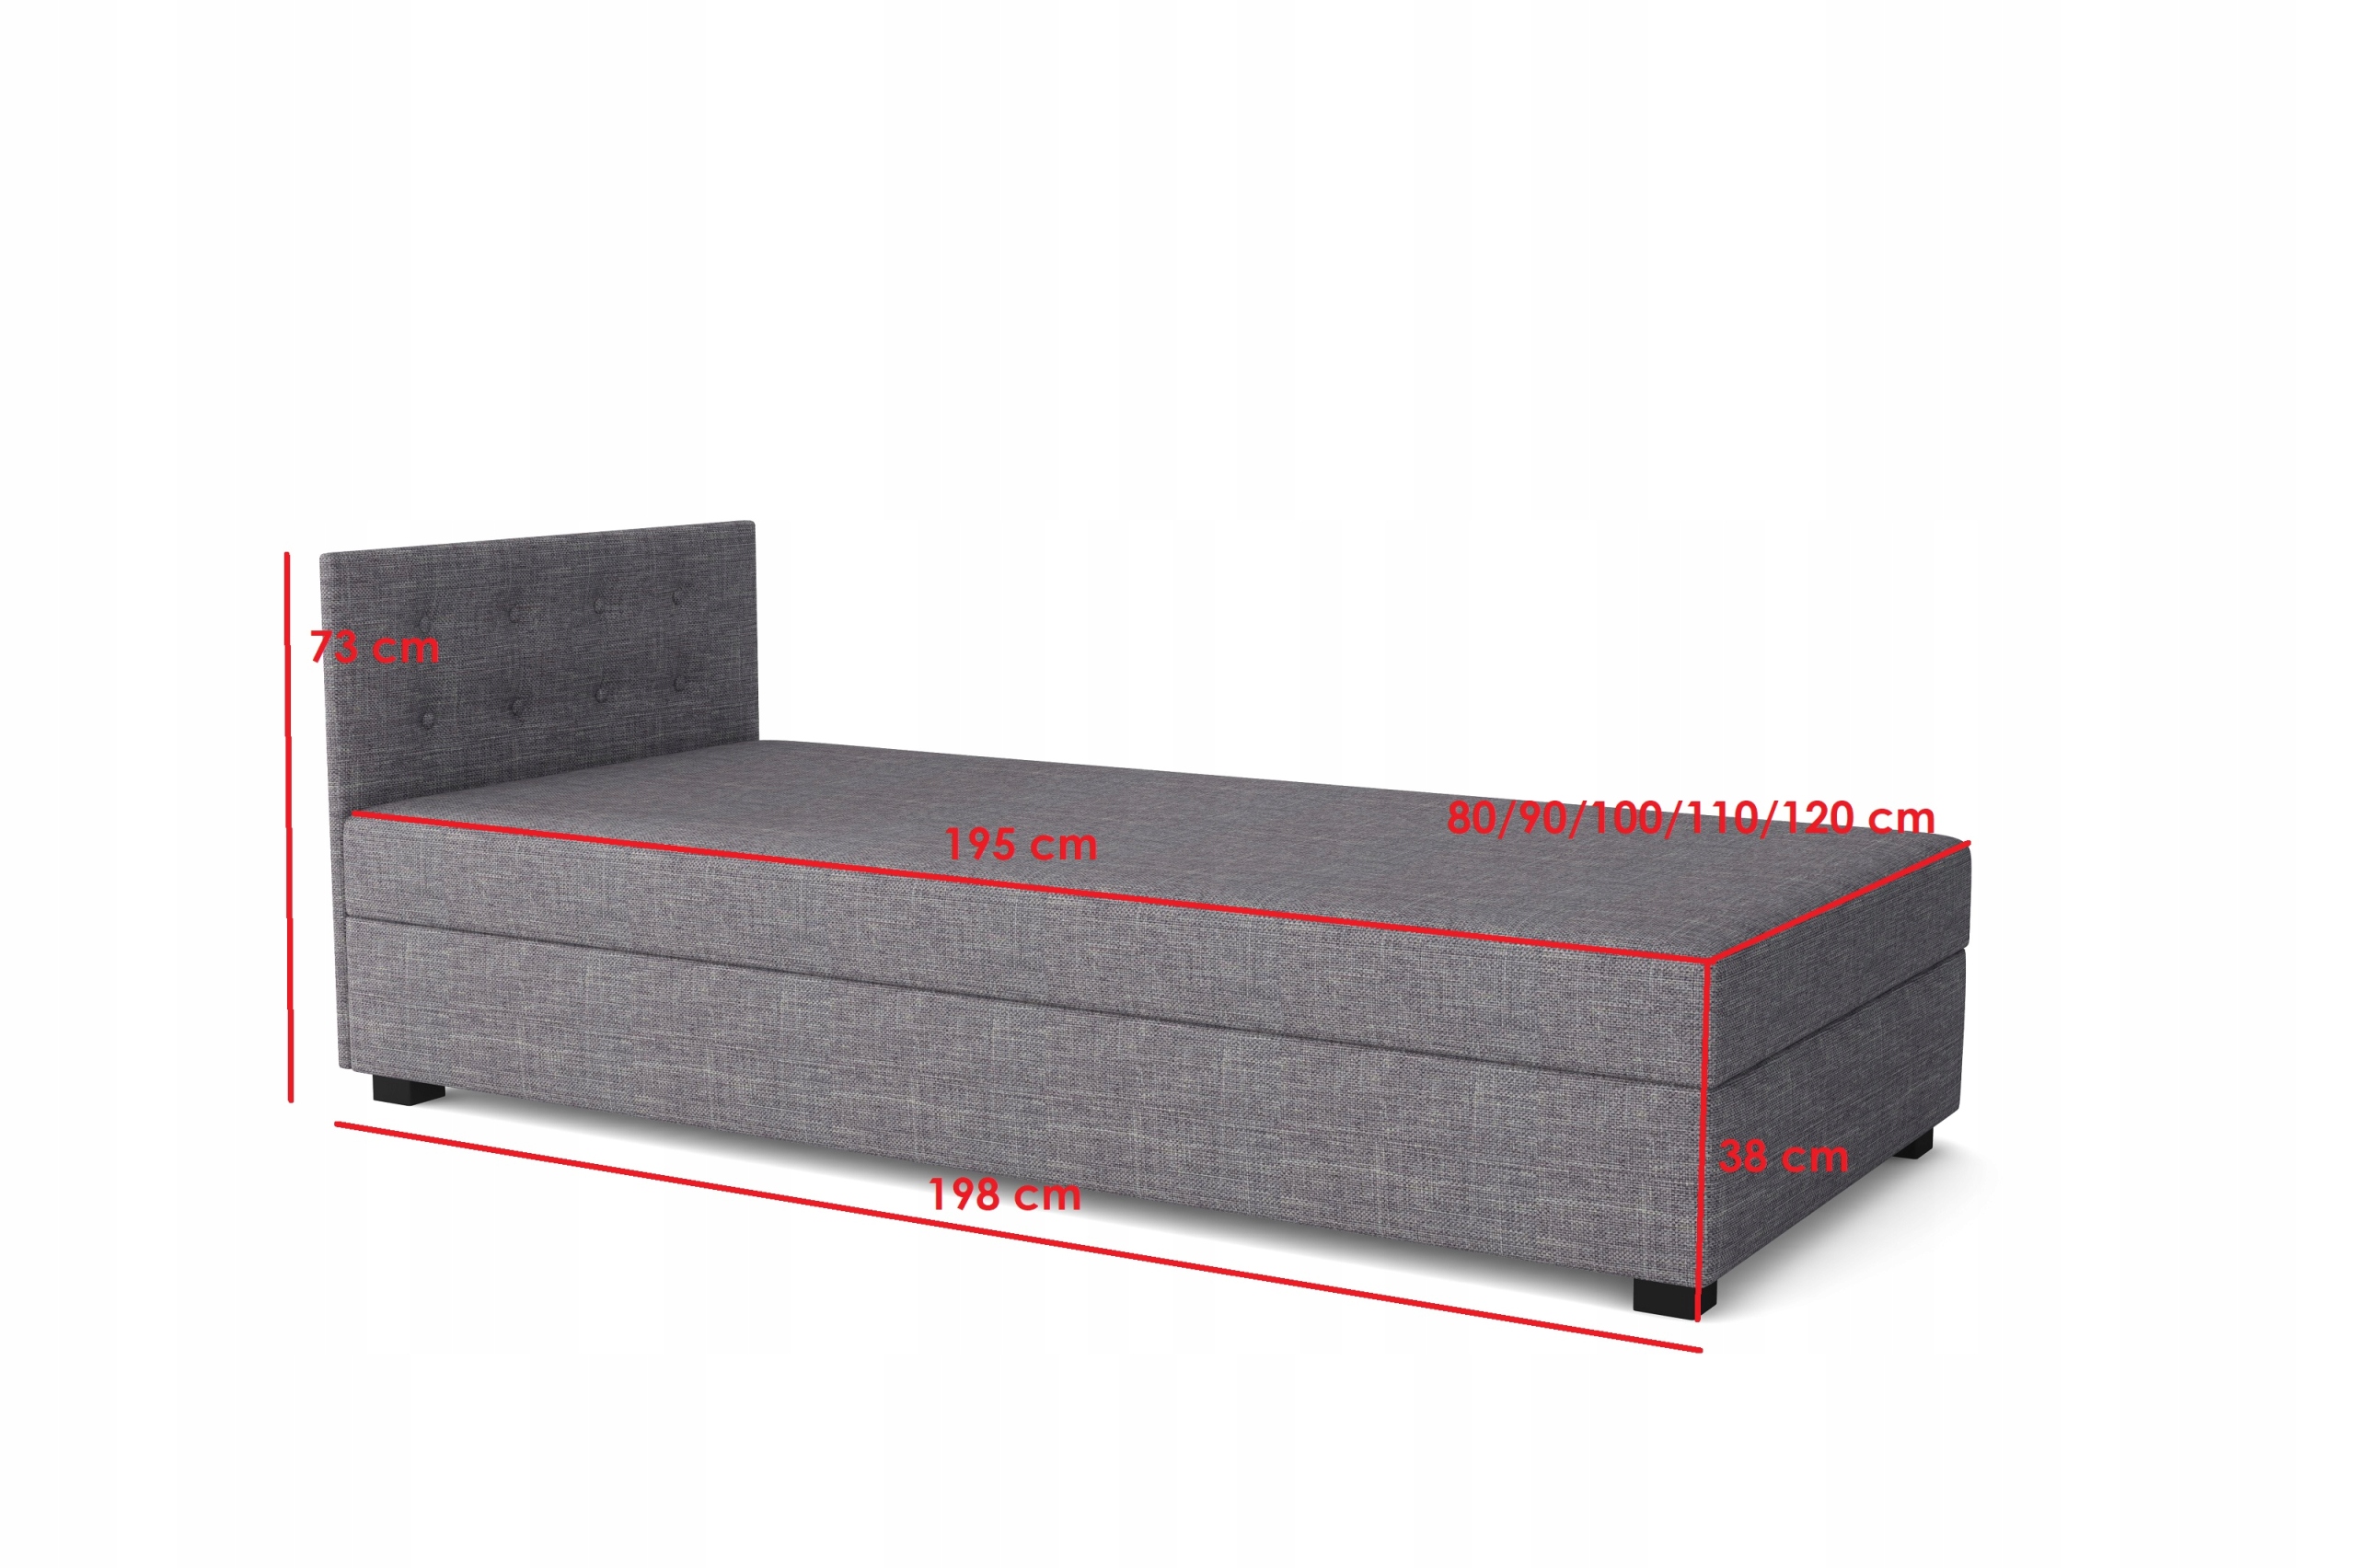 Молодежная кровать Олаф диван 120x200 + матрас спальная поверхность-Ширина (см) 111-120 см